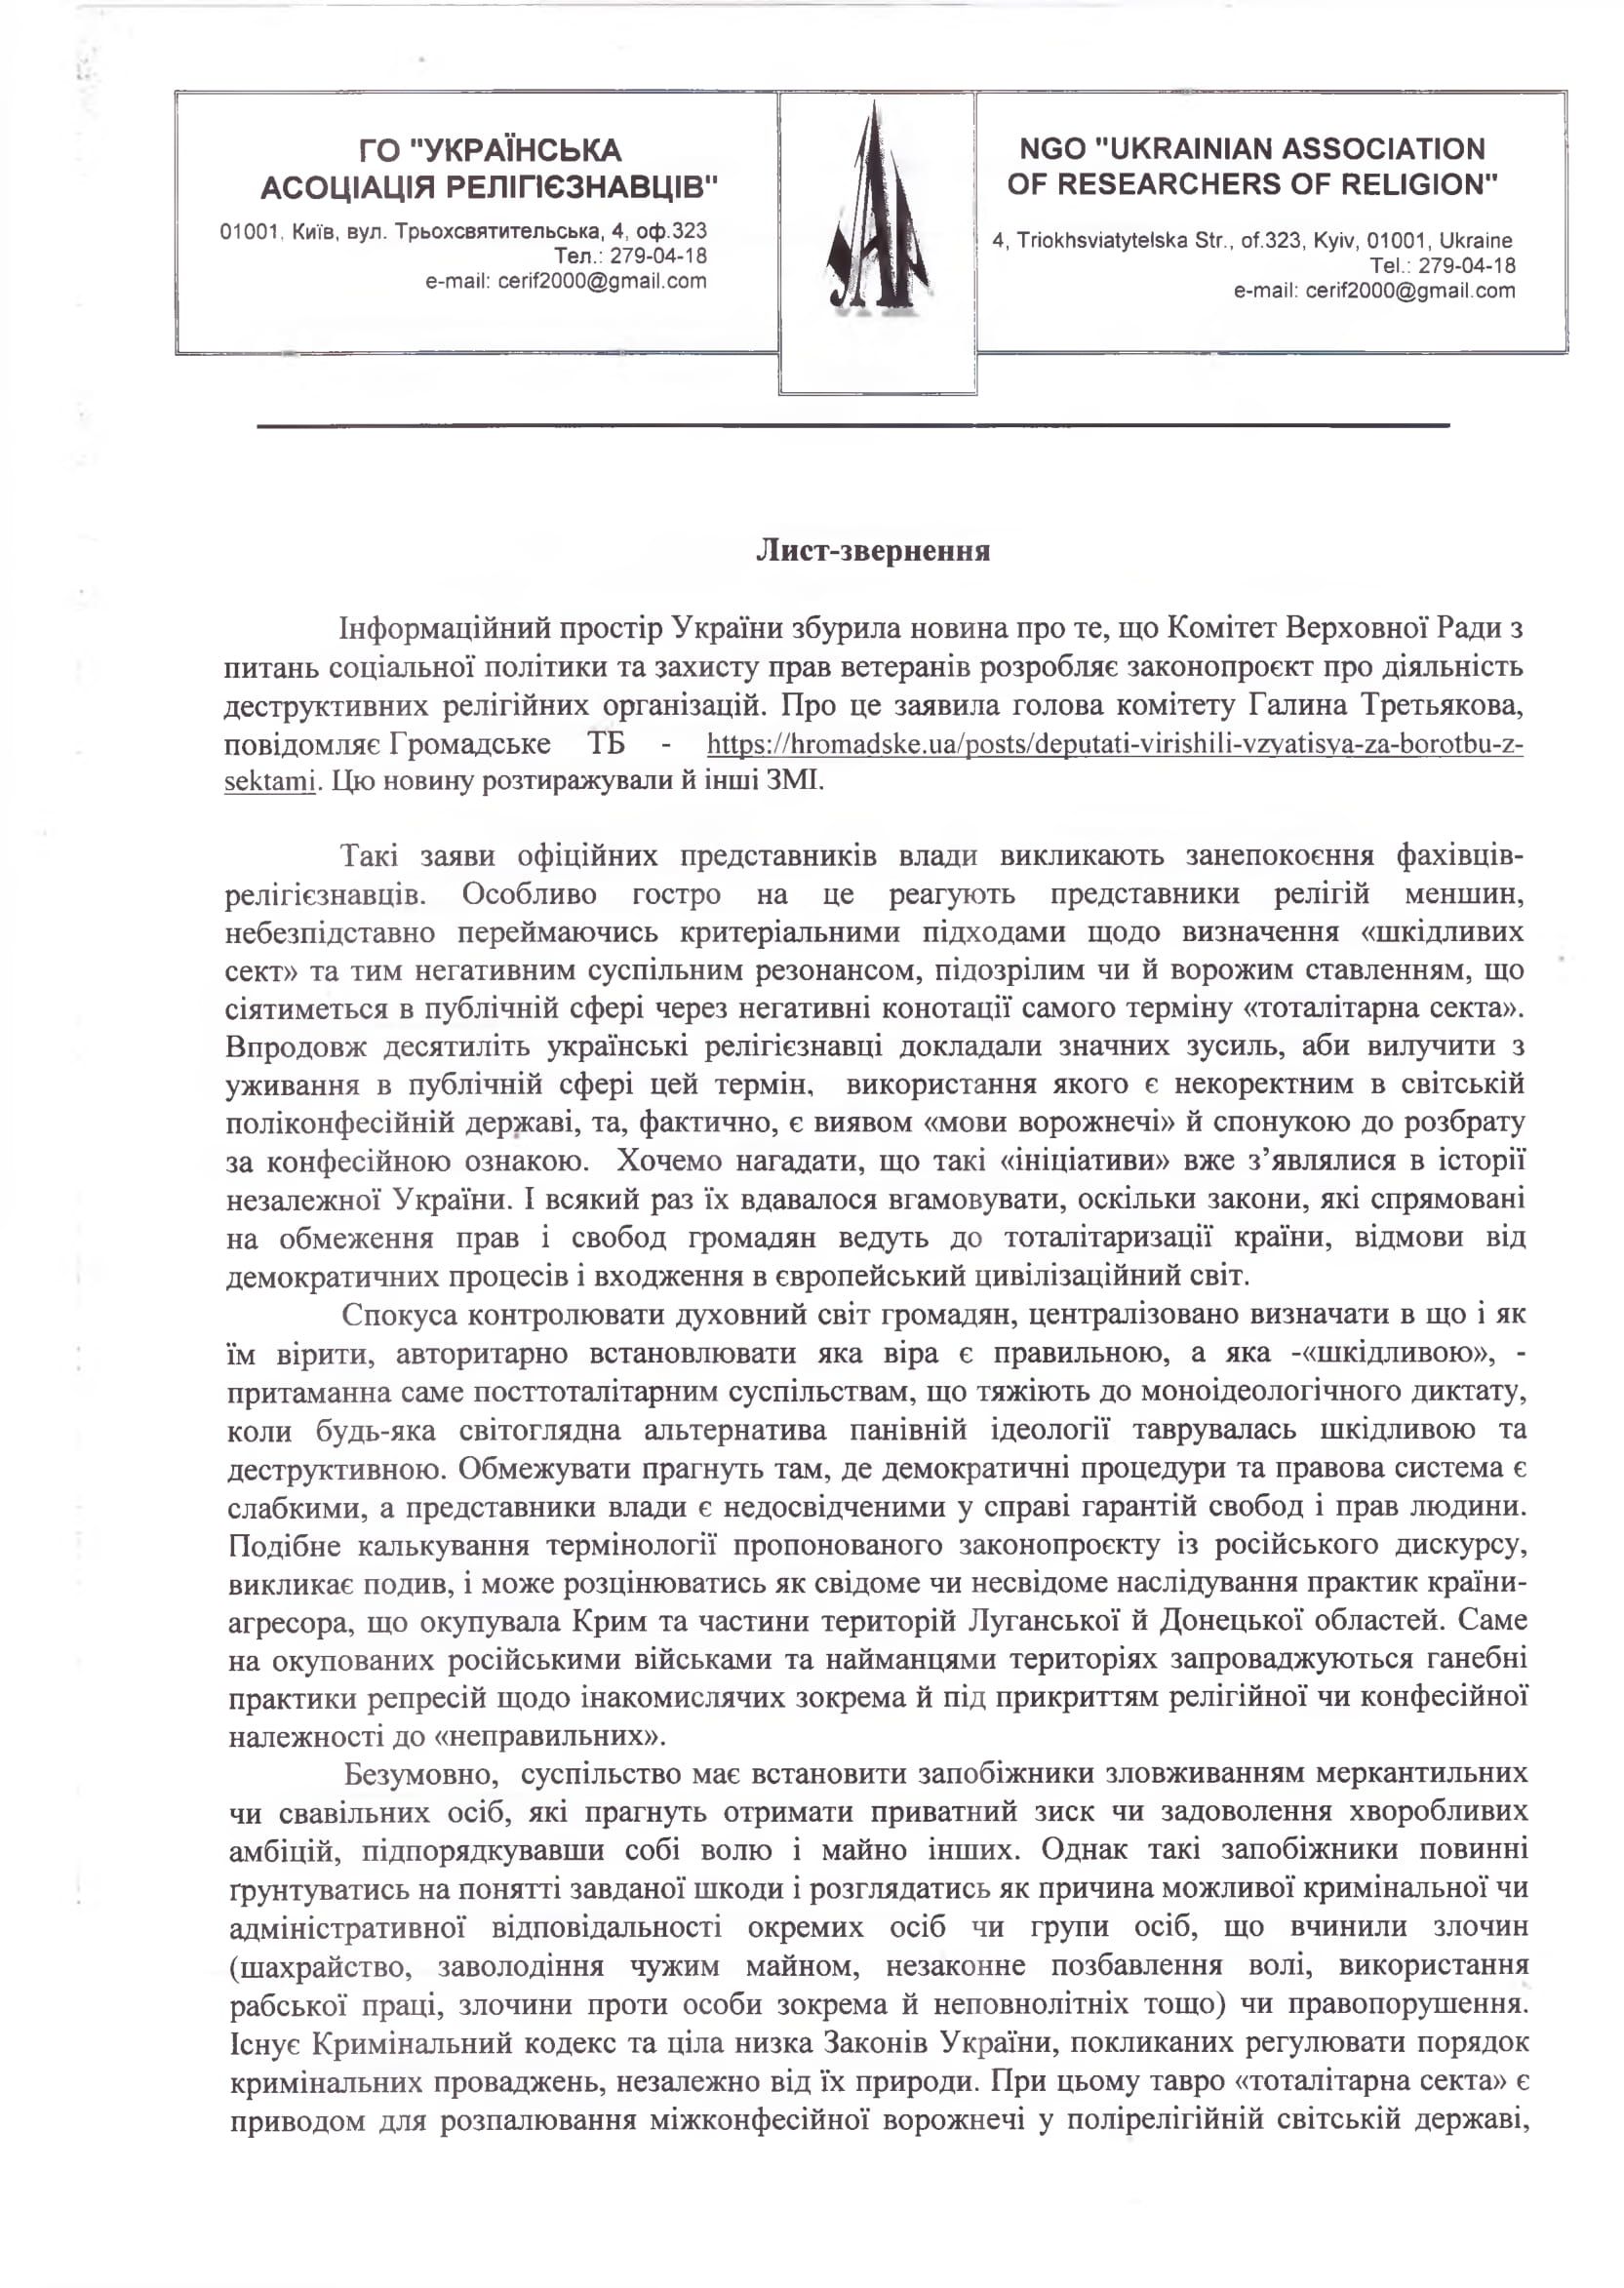 Закон про секти. Українська Асоціація Релігієзнавців реагує на проєкт закону - фото 53971